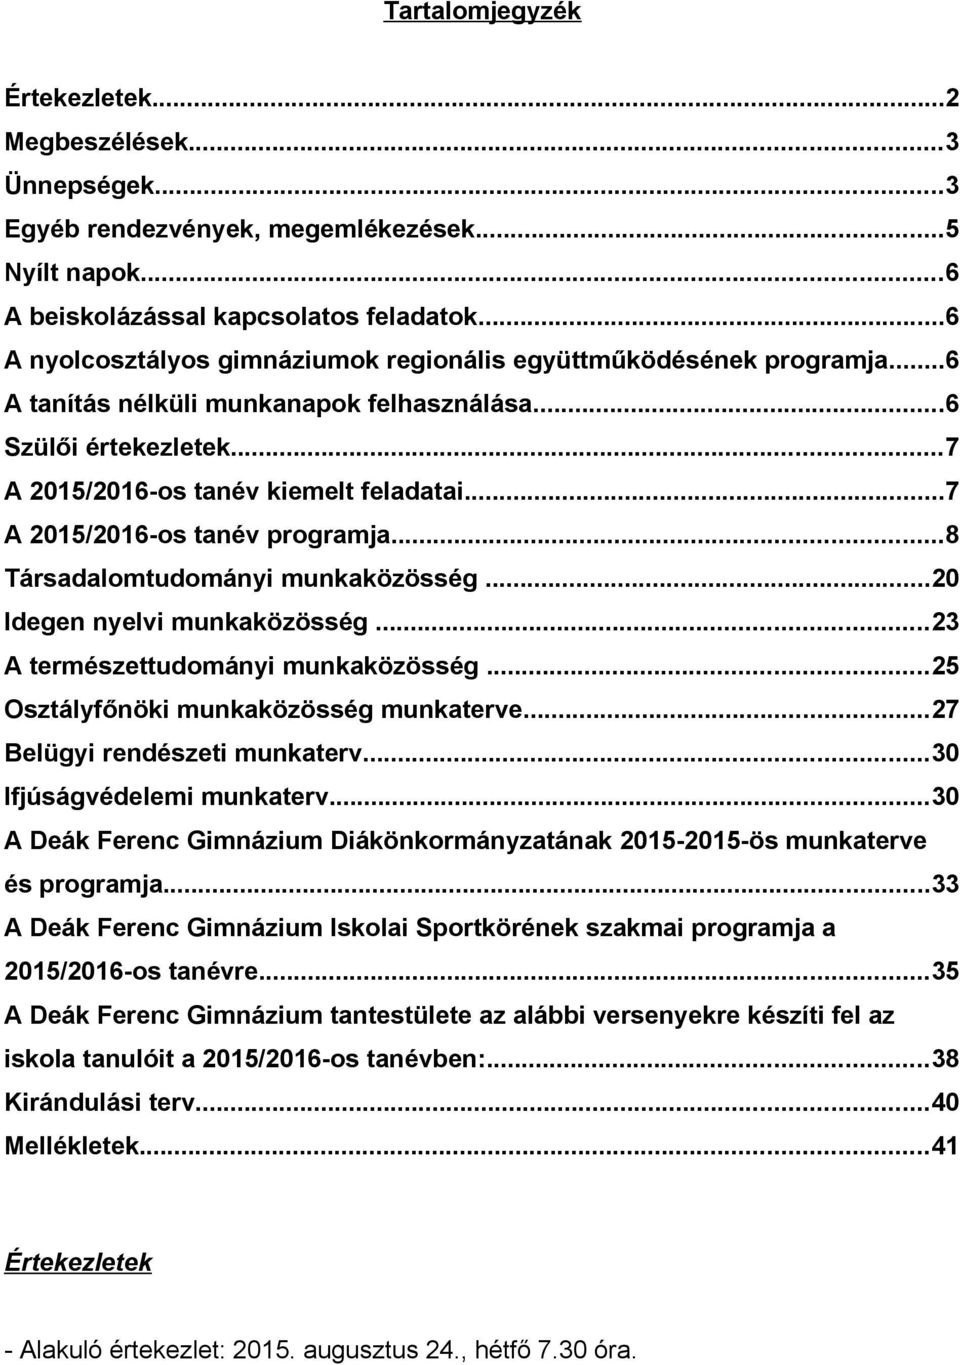 ..7 A 2015/2016-os tanév programja...8 Társadalomtudományi munkaközösség...20 Idegen nyelvi munkaközösség...23 A természettudományi munkaközösség...25 Osztályfőnöki munkaközösség munkaterve.